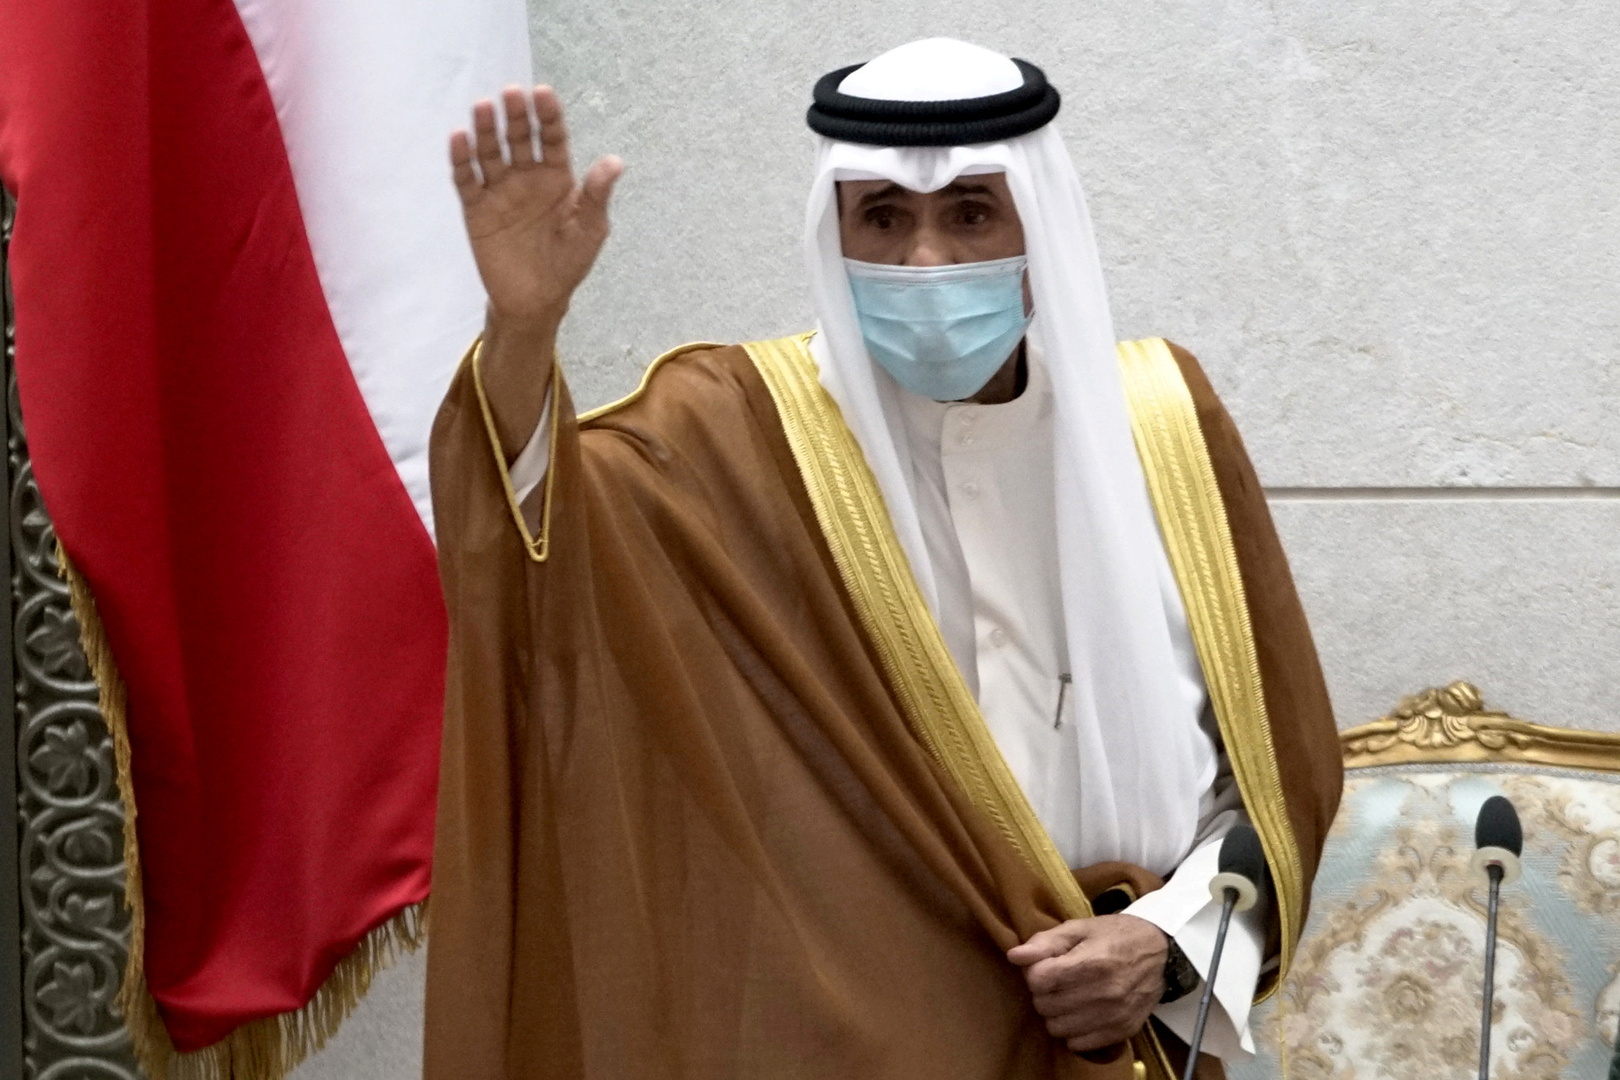 أمير الكويت يصدر أمرا بالاستعانة بولي العهد لممارسة بعض اختصاصات الأمير الدستورية بصفة مؤقتة